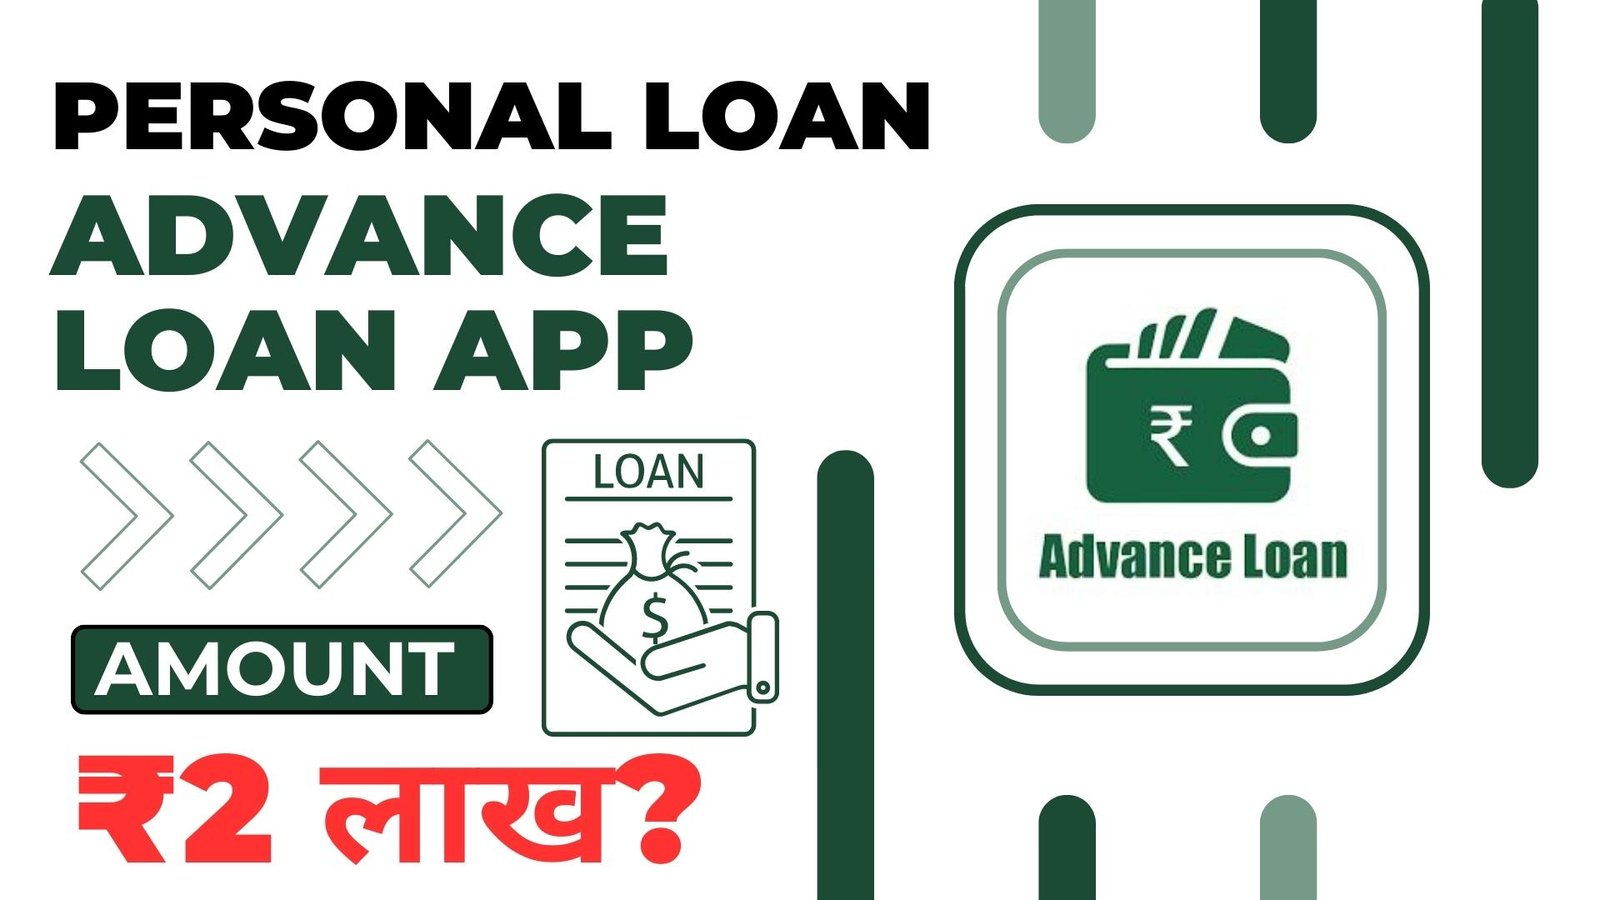 Advance Loan App Loan Amount